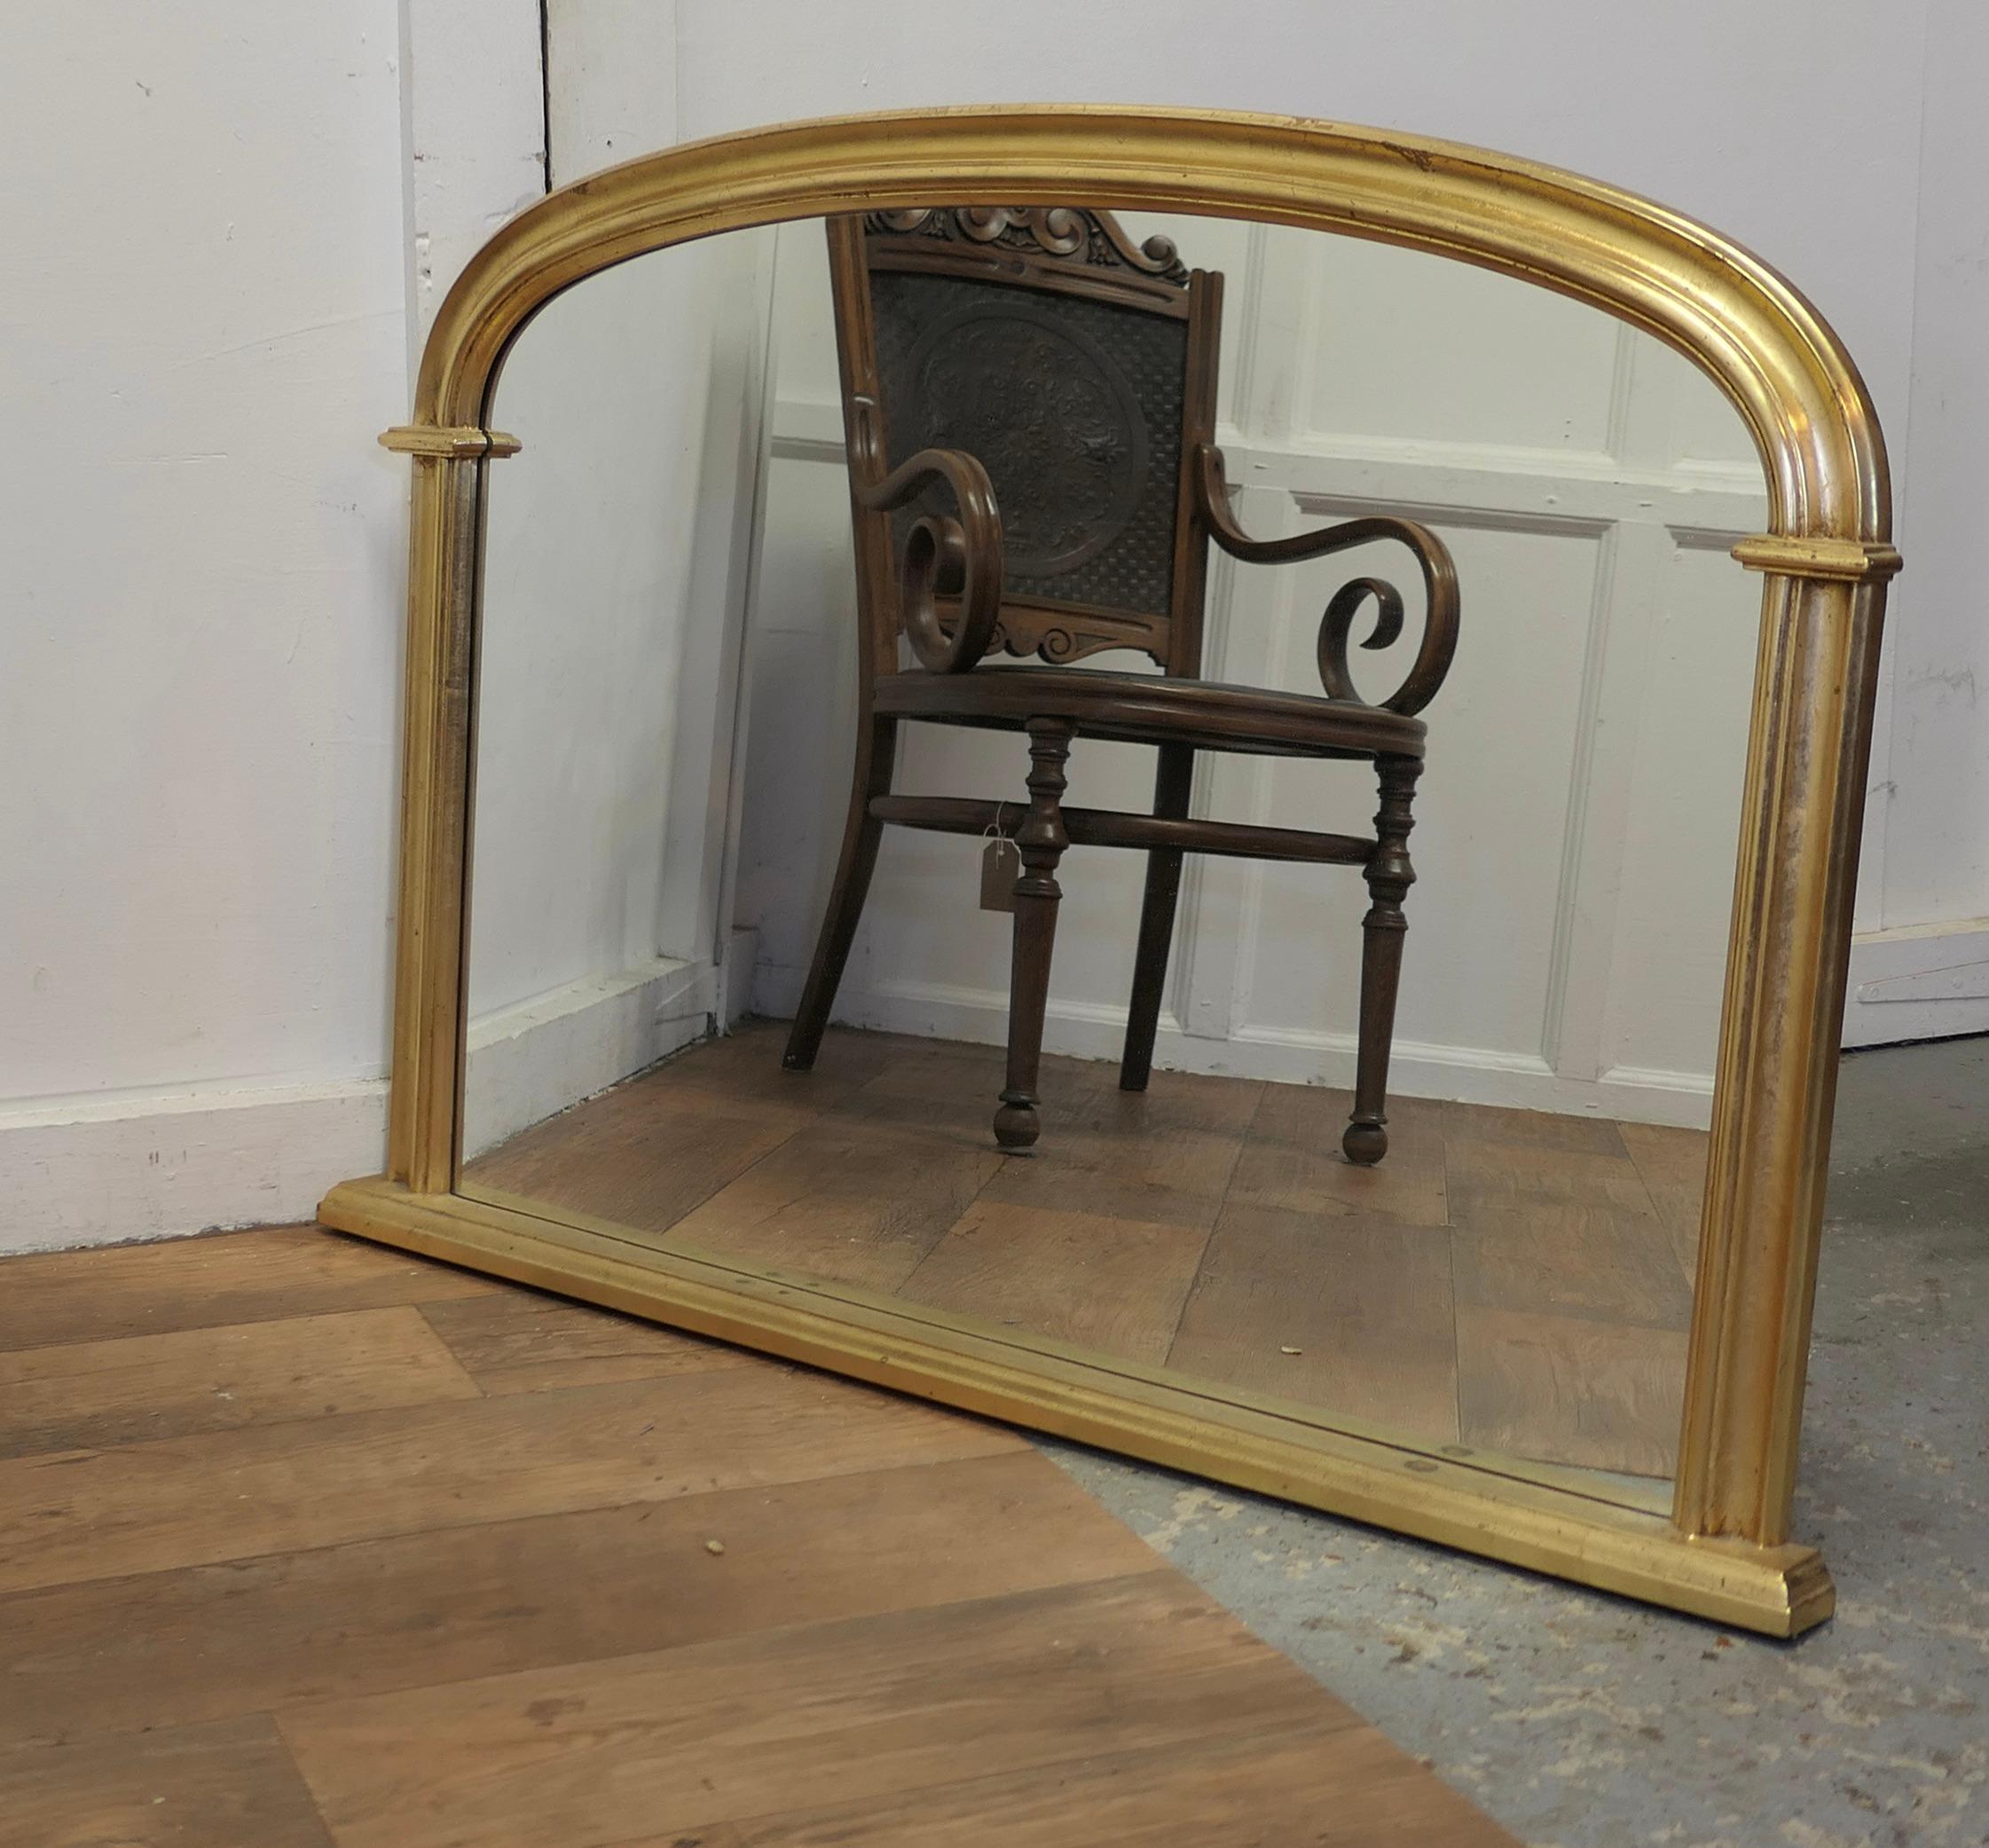 Miroir trumeau de style victorien arqué en or

Un joli miroir de cheminée 

Il s'agit d'une pièce charmante, le cadre moulé arqué de 2,5 pouces est légèrement incurvé avec une base plate.
Le miroir est en bon état.
Le miroir mesure 32